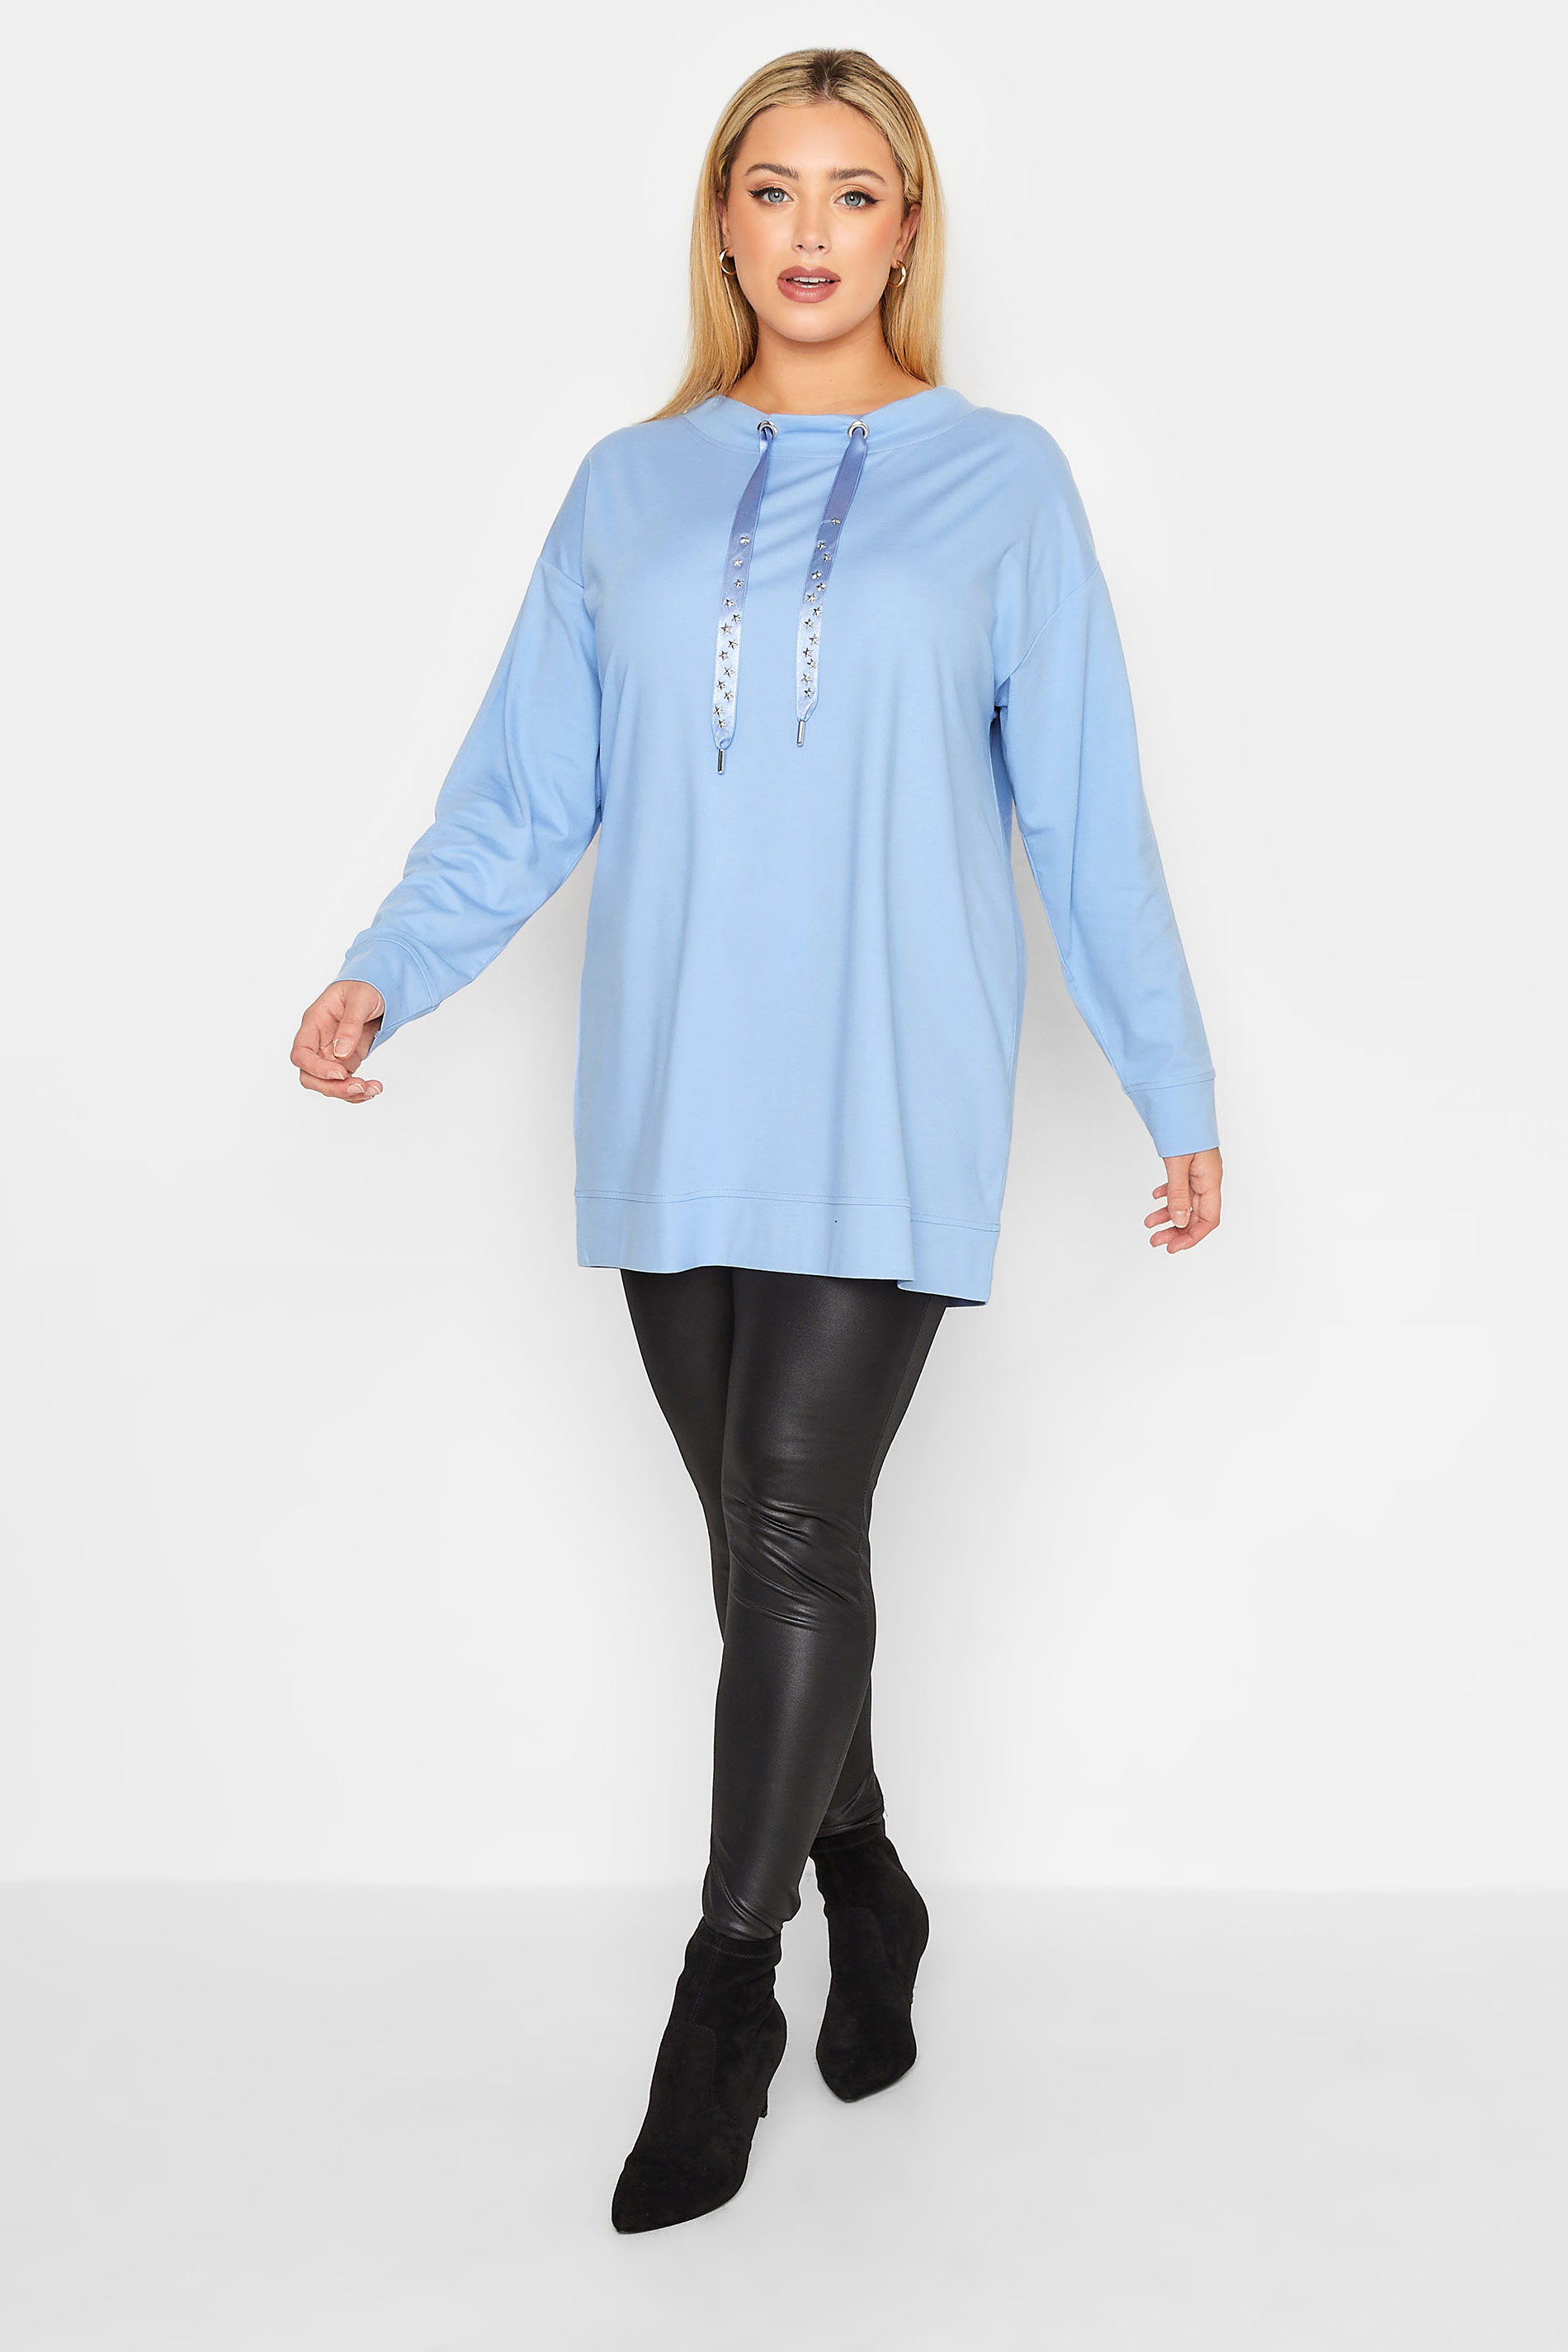 YOURS LUXURY Plus Size Blue Star Embellished Sweatshirt | Yours Clothing 3